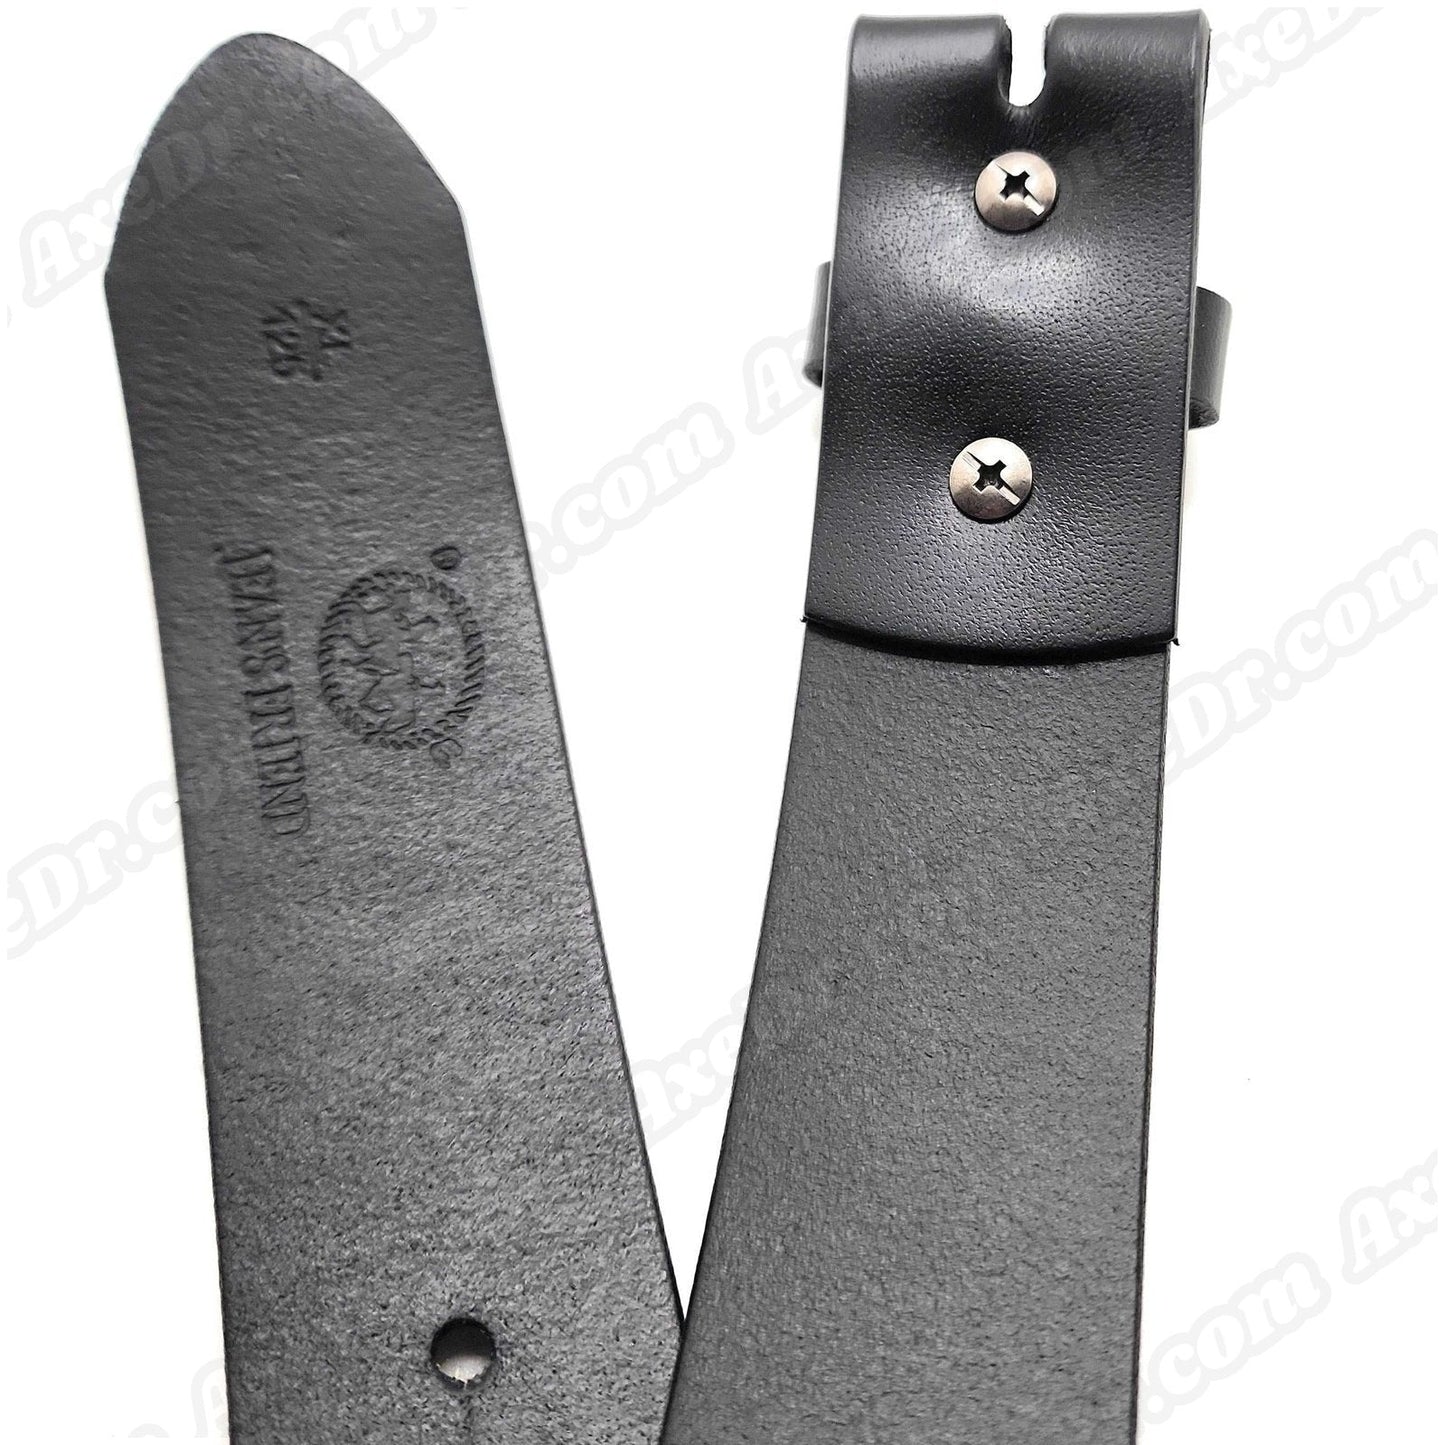 Genuine Leather Belt Strap for Buckles shop.AxeDr.com belt strap, Genuine Leather, leather belt, no buckle, Novelty